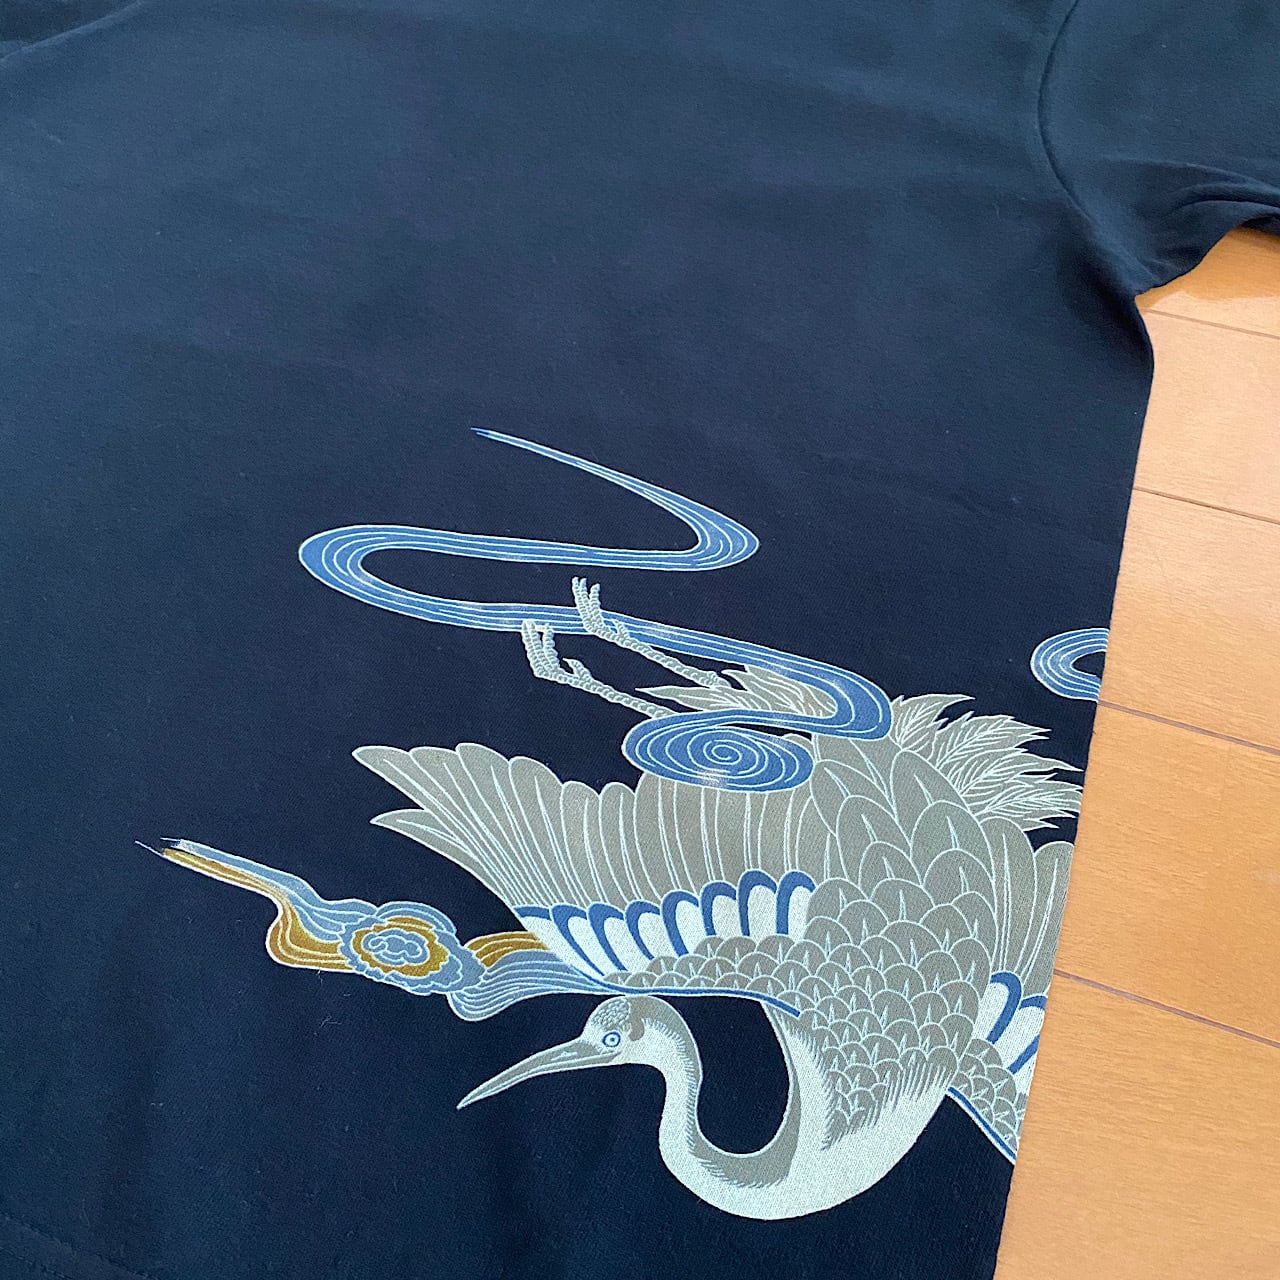 tsuru crane x dragon embroidered T-shirt